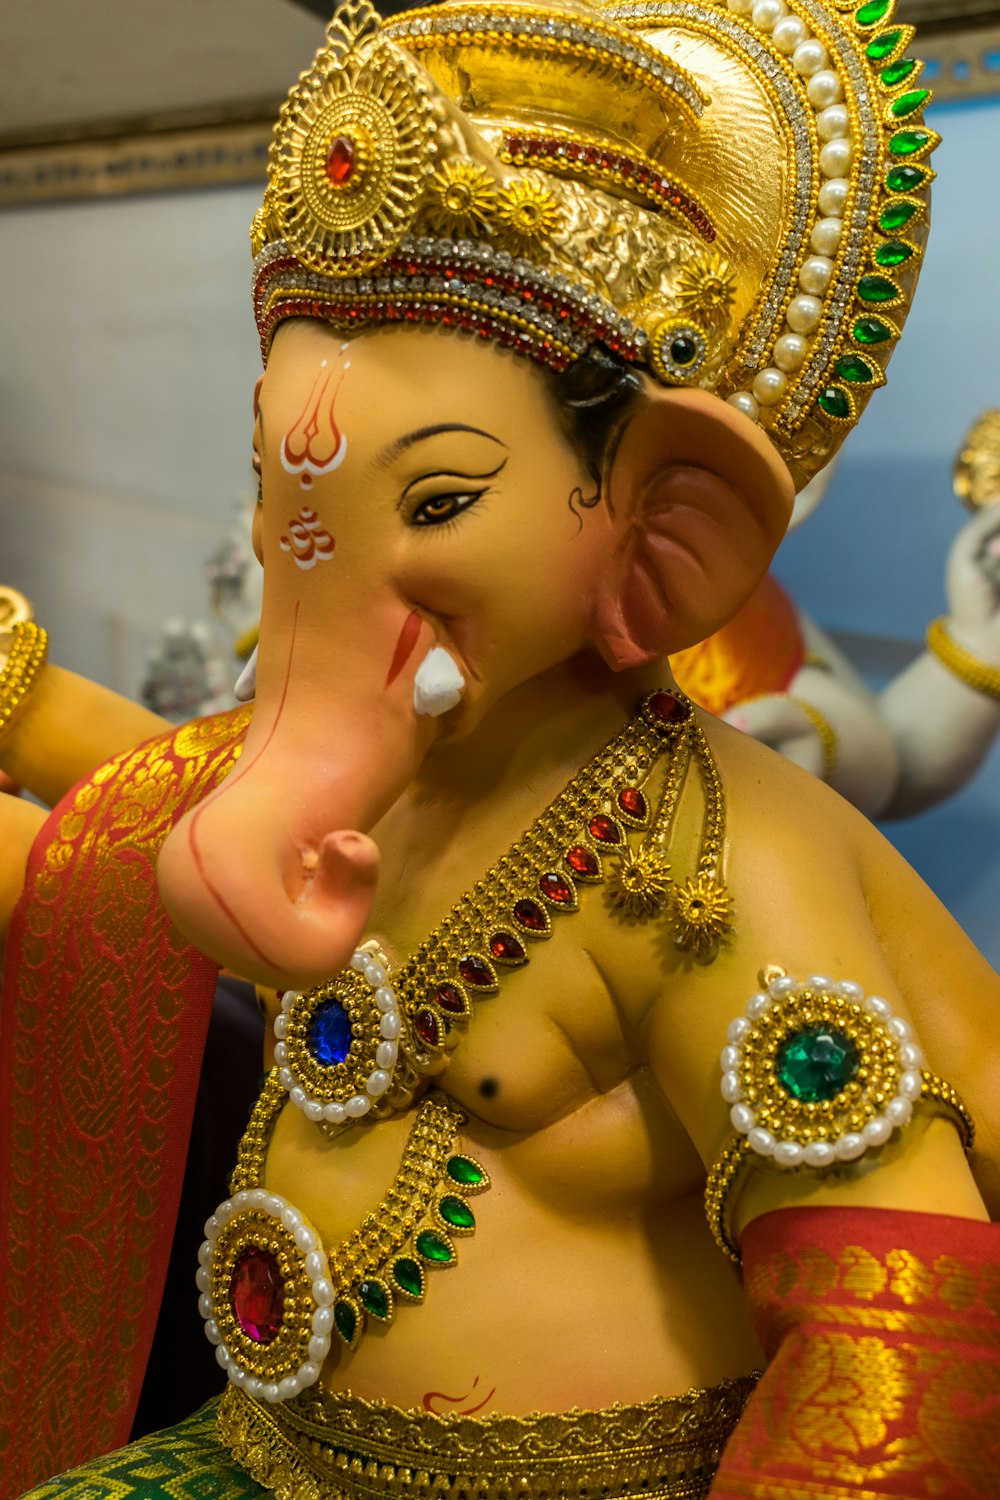 a statue of an elephant wearing a gold headdress